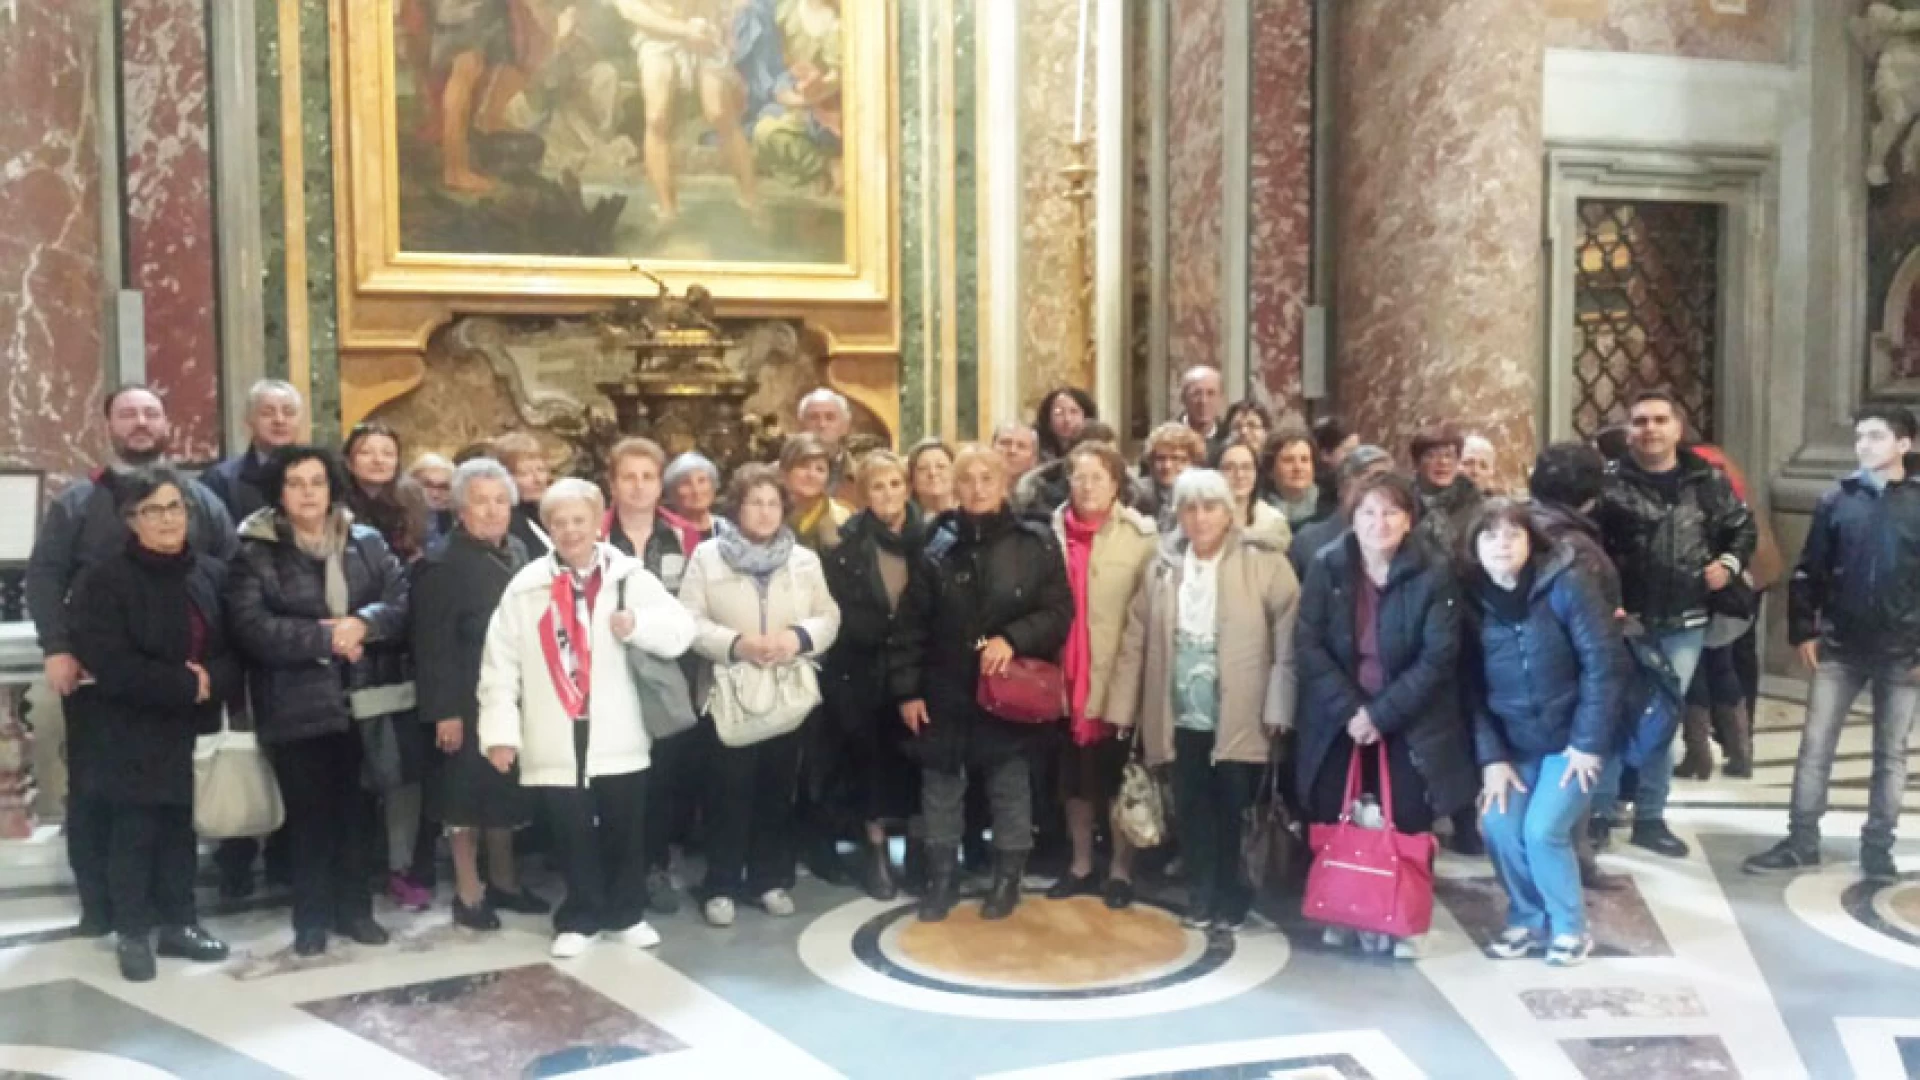 Venafro: la parrocchia di San Simeone in visita a San Pietro per la chiusura della Porta Santa.